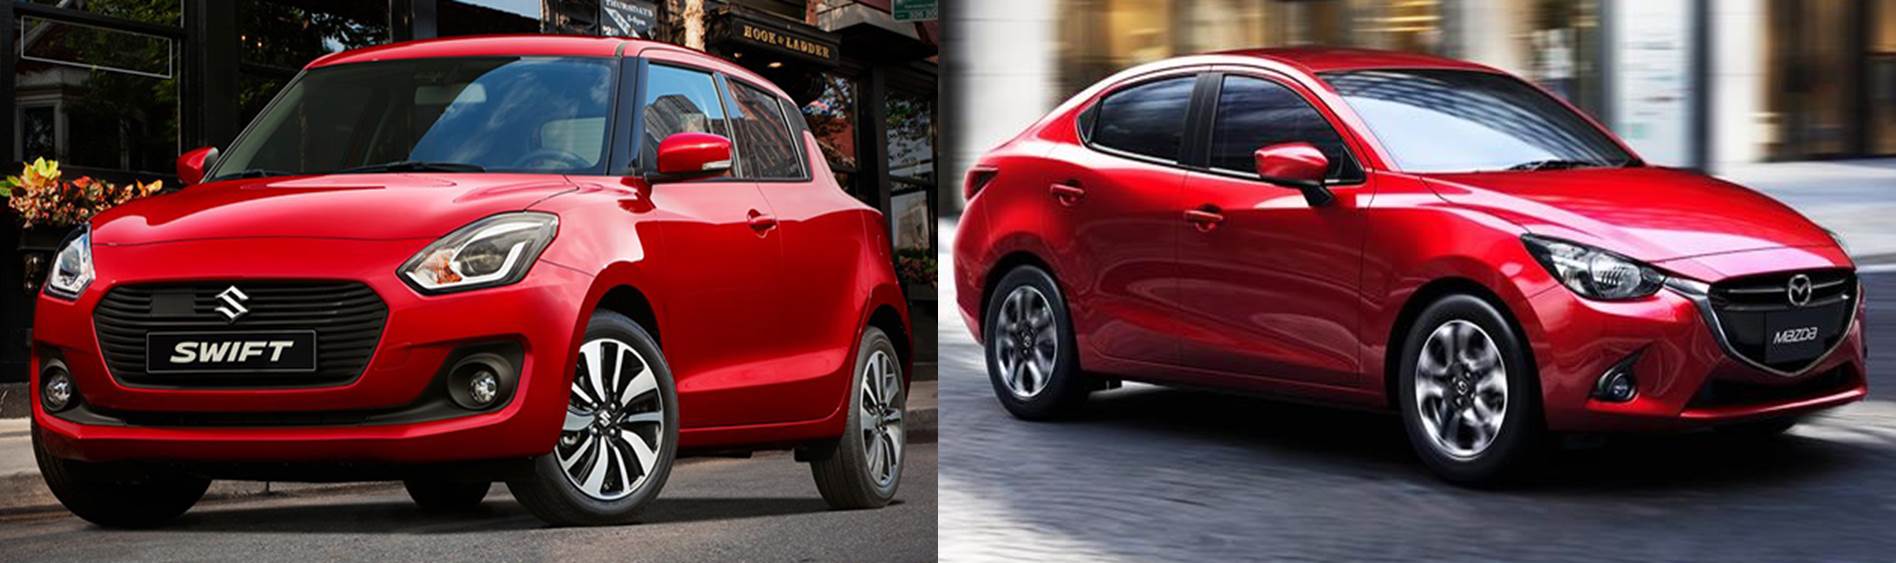 So sánh Suzuki Swift và Mazda2, So sánh xe Suzuki Swift và Mazda2, Suzuki Swift, đánh giá xe Suzuki Swift, Mazda2, đánh giá xe Mazda2